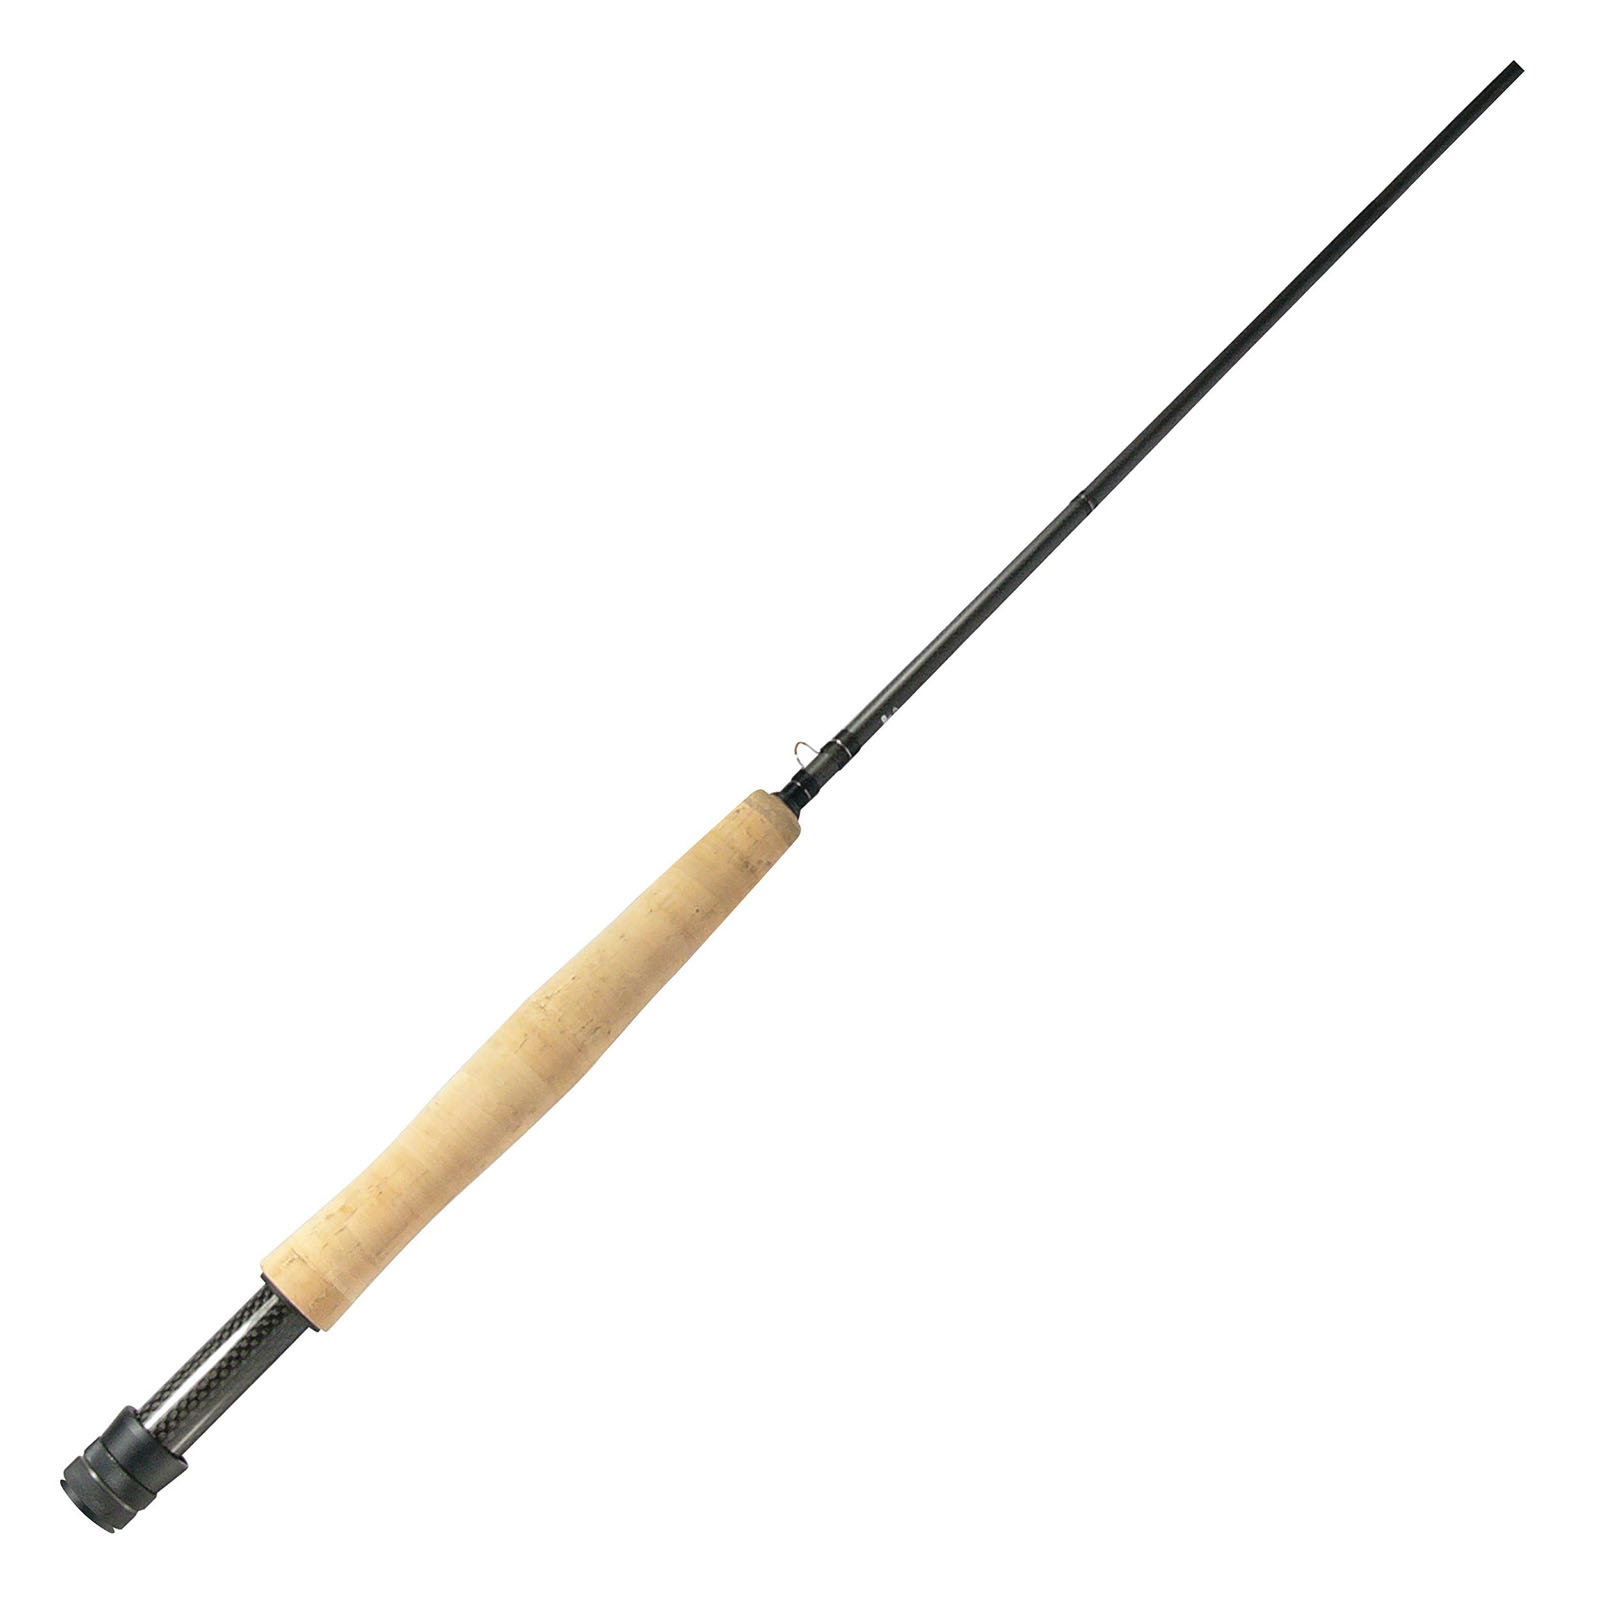 Okuma - Slv Fly Rod, 4 Piece - 8'6 4wt